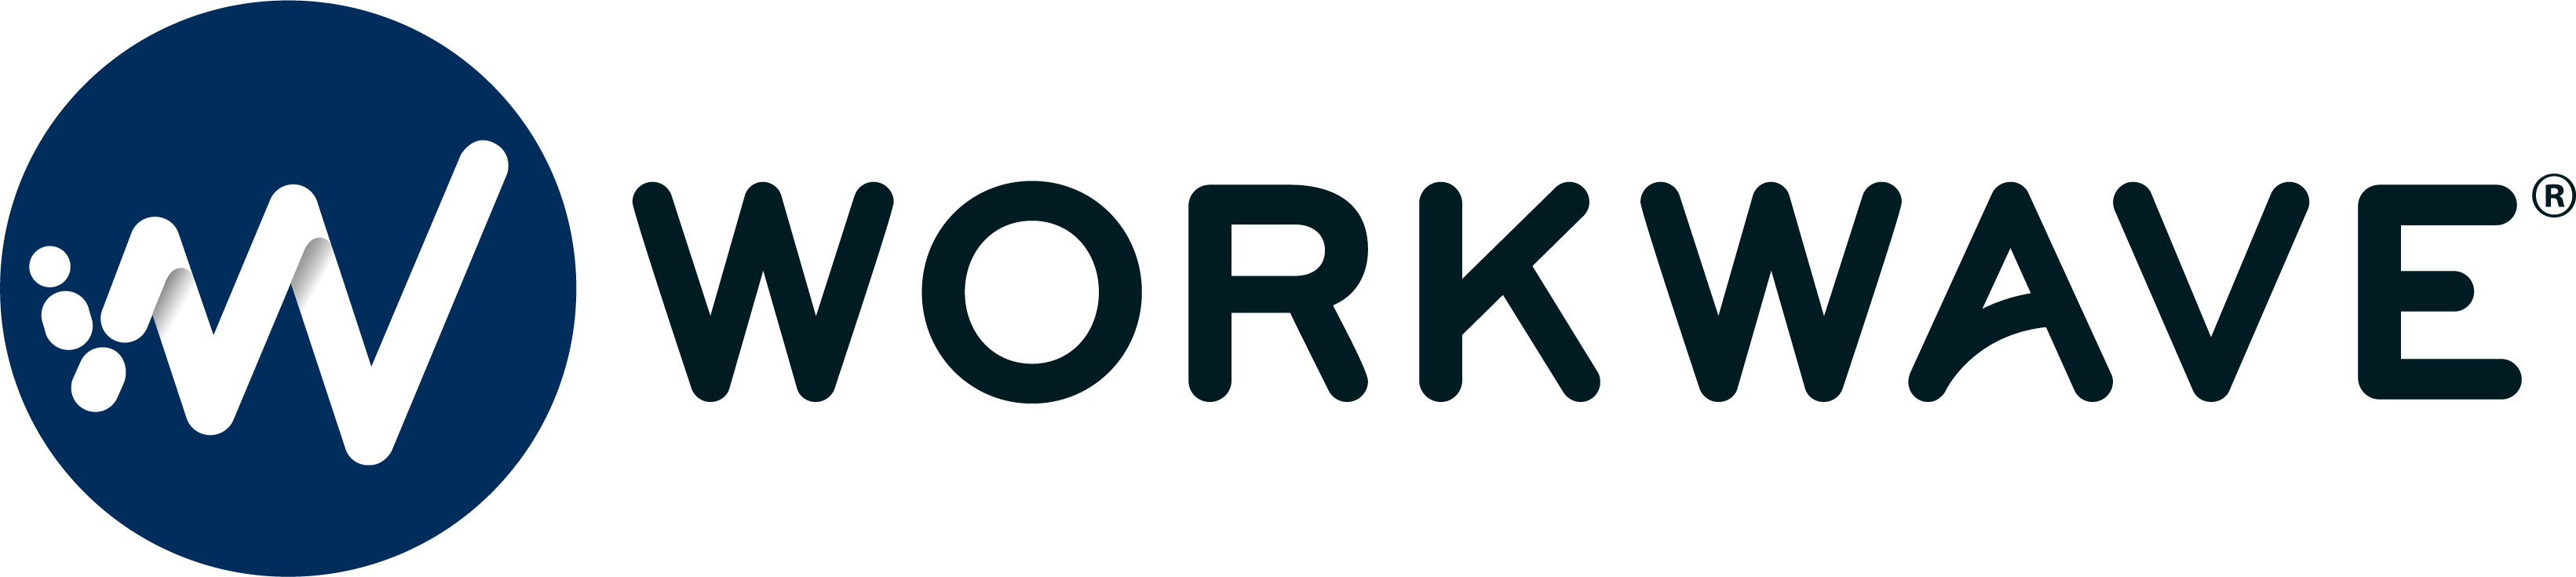 WorkWave LLC - Moteur de routage WorkWave